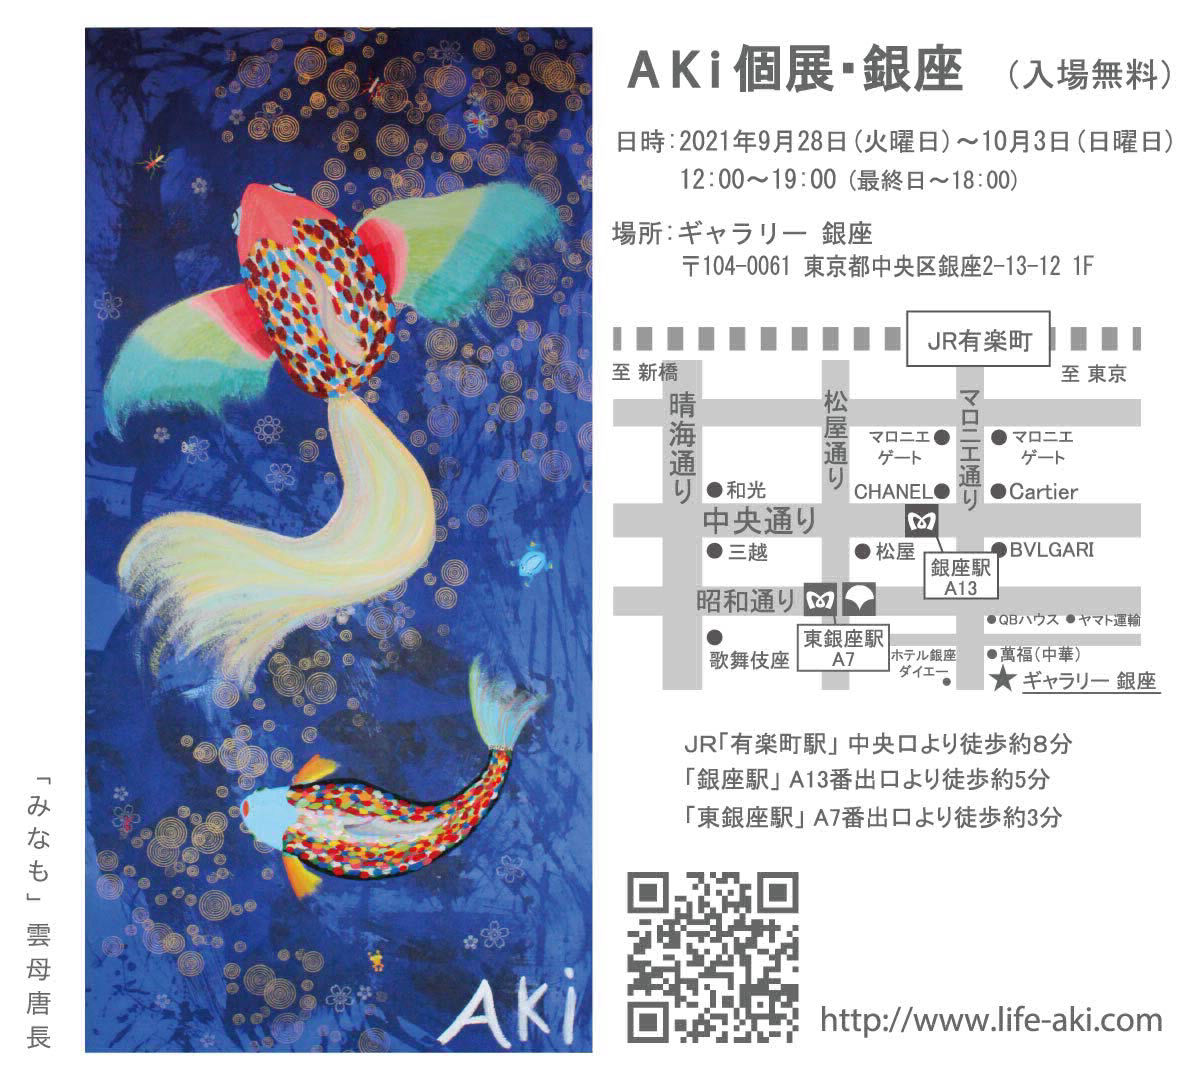 AKi Exhibition in GINZA AKi個展 9月10月展 9月28日より